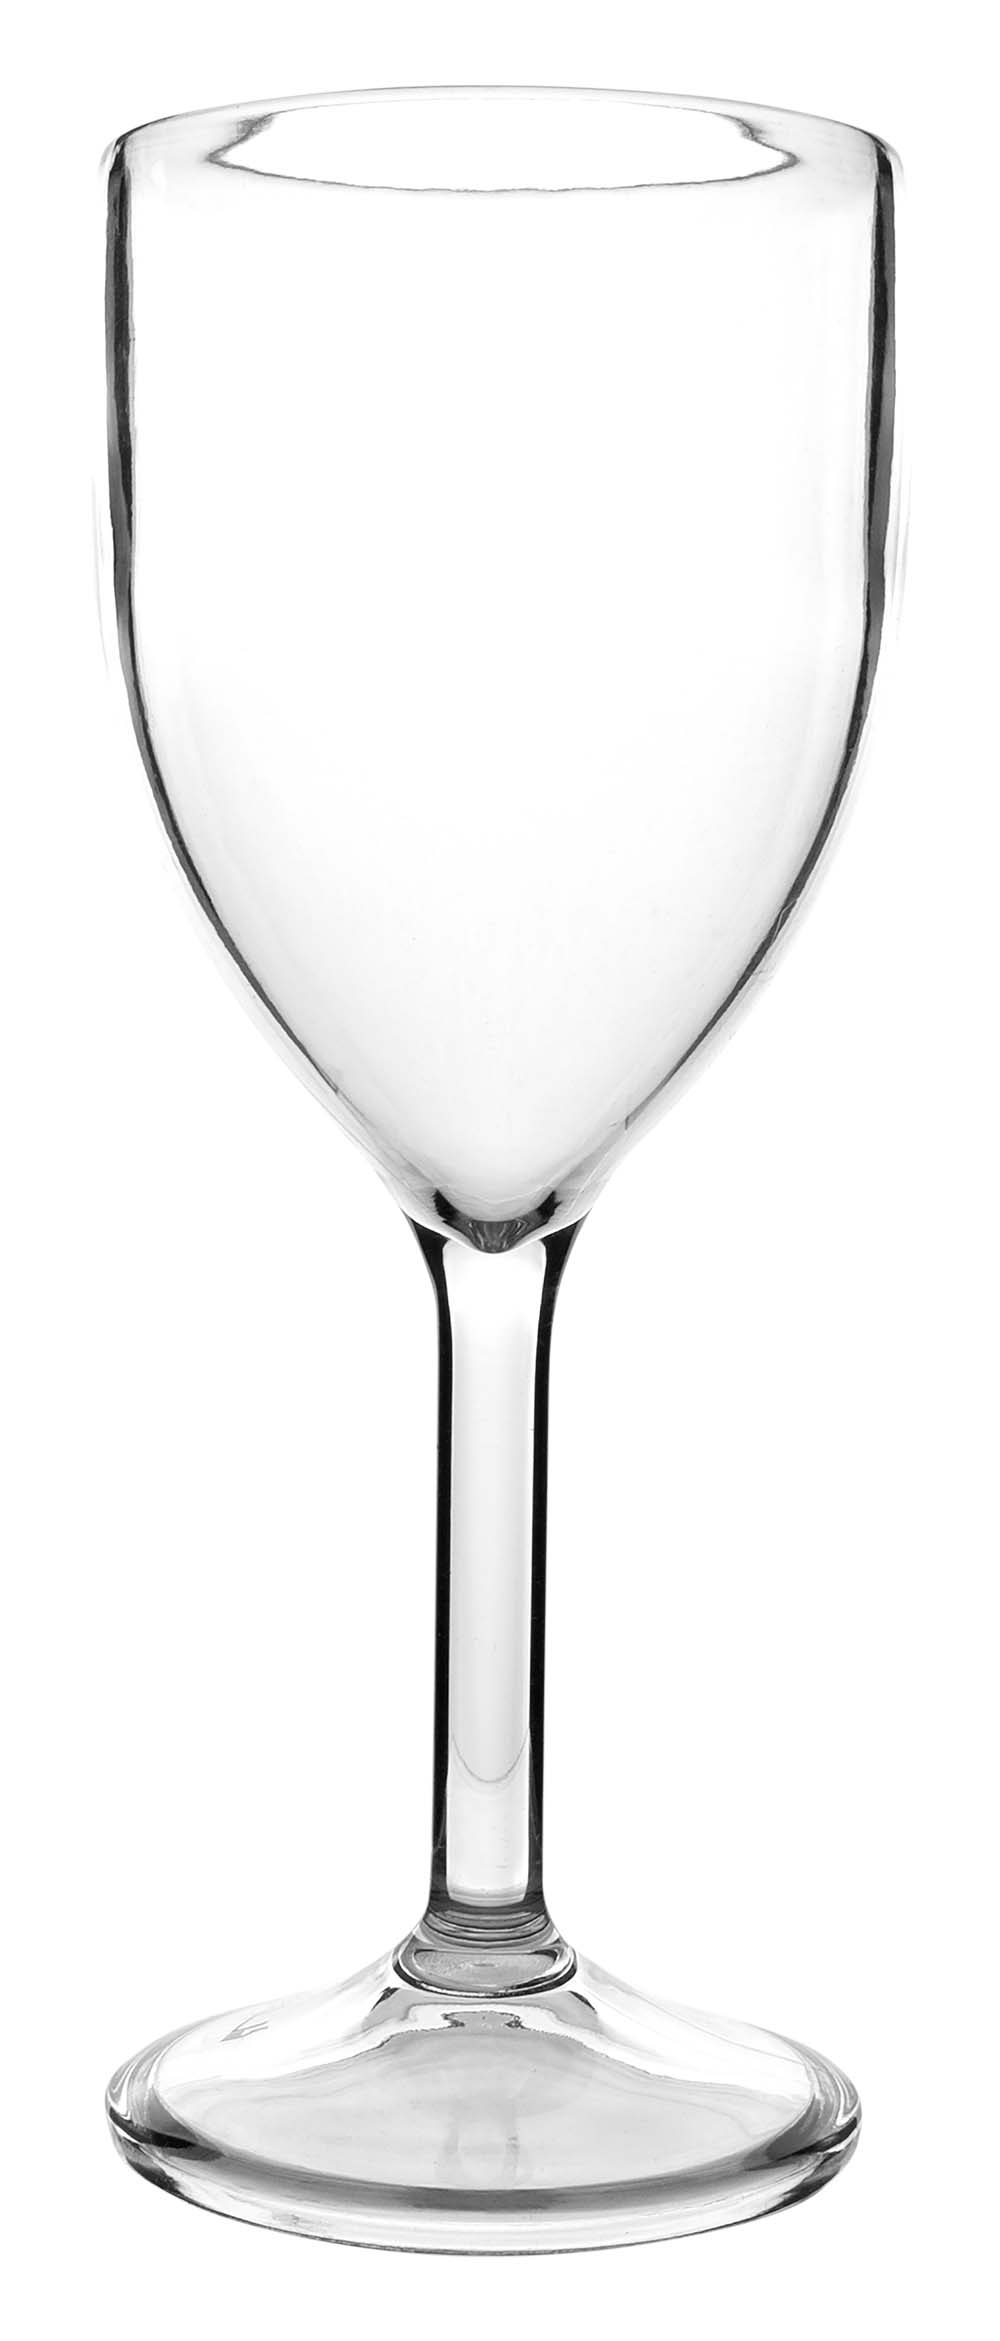 6101442 Een extra stevige en luxe set wijnglazen. Gemaakt van 100% polycarbonaat. Hierdoor is het glas vrijwel onbreekbaar, lichtgewicht en kraswerend. Ook zijn deze glazen vaatwasmachinebestendig. Per 2 stuks verpakt.